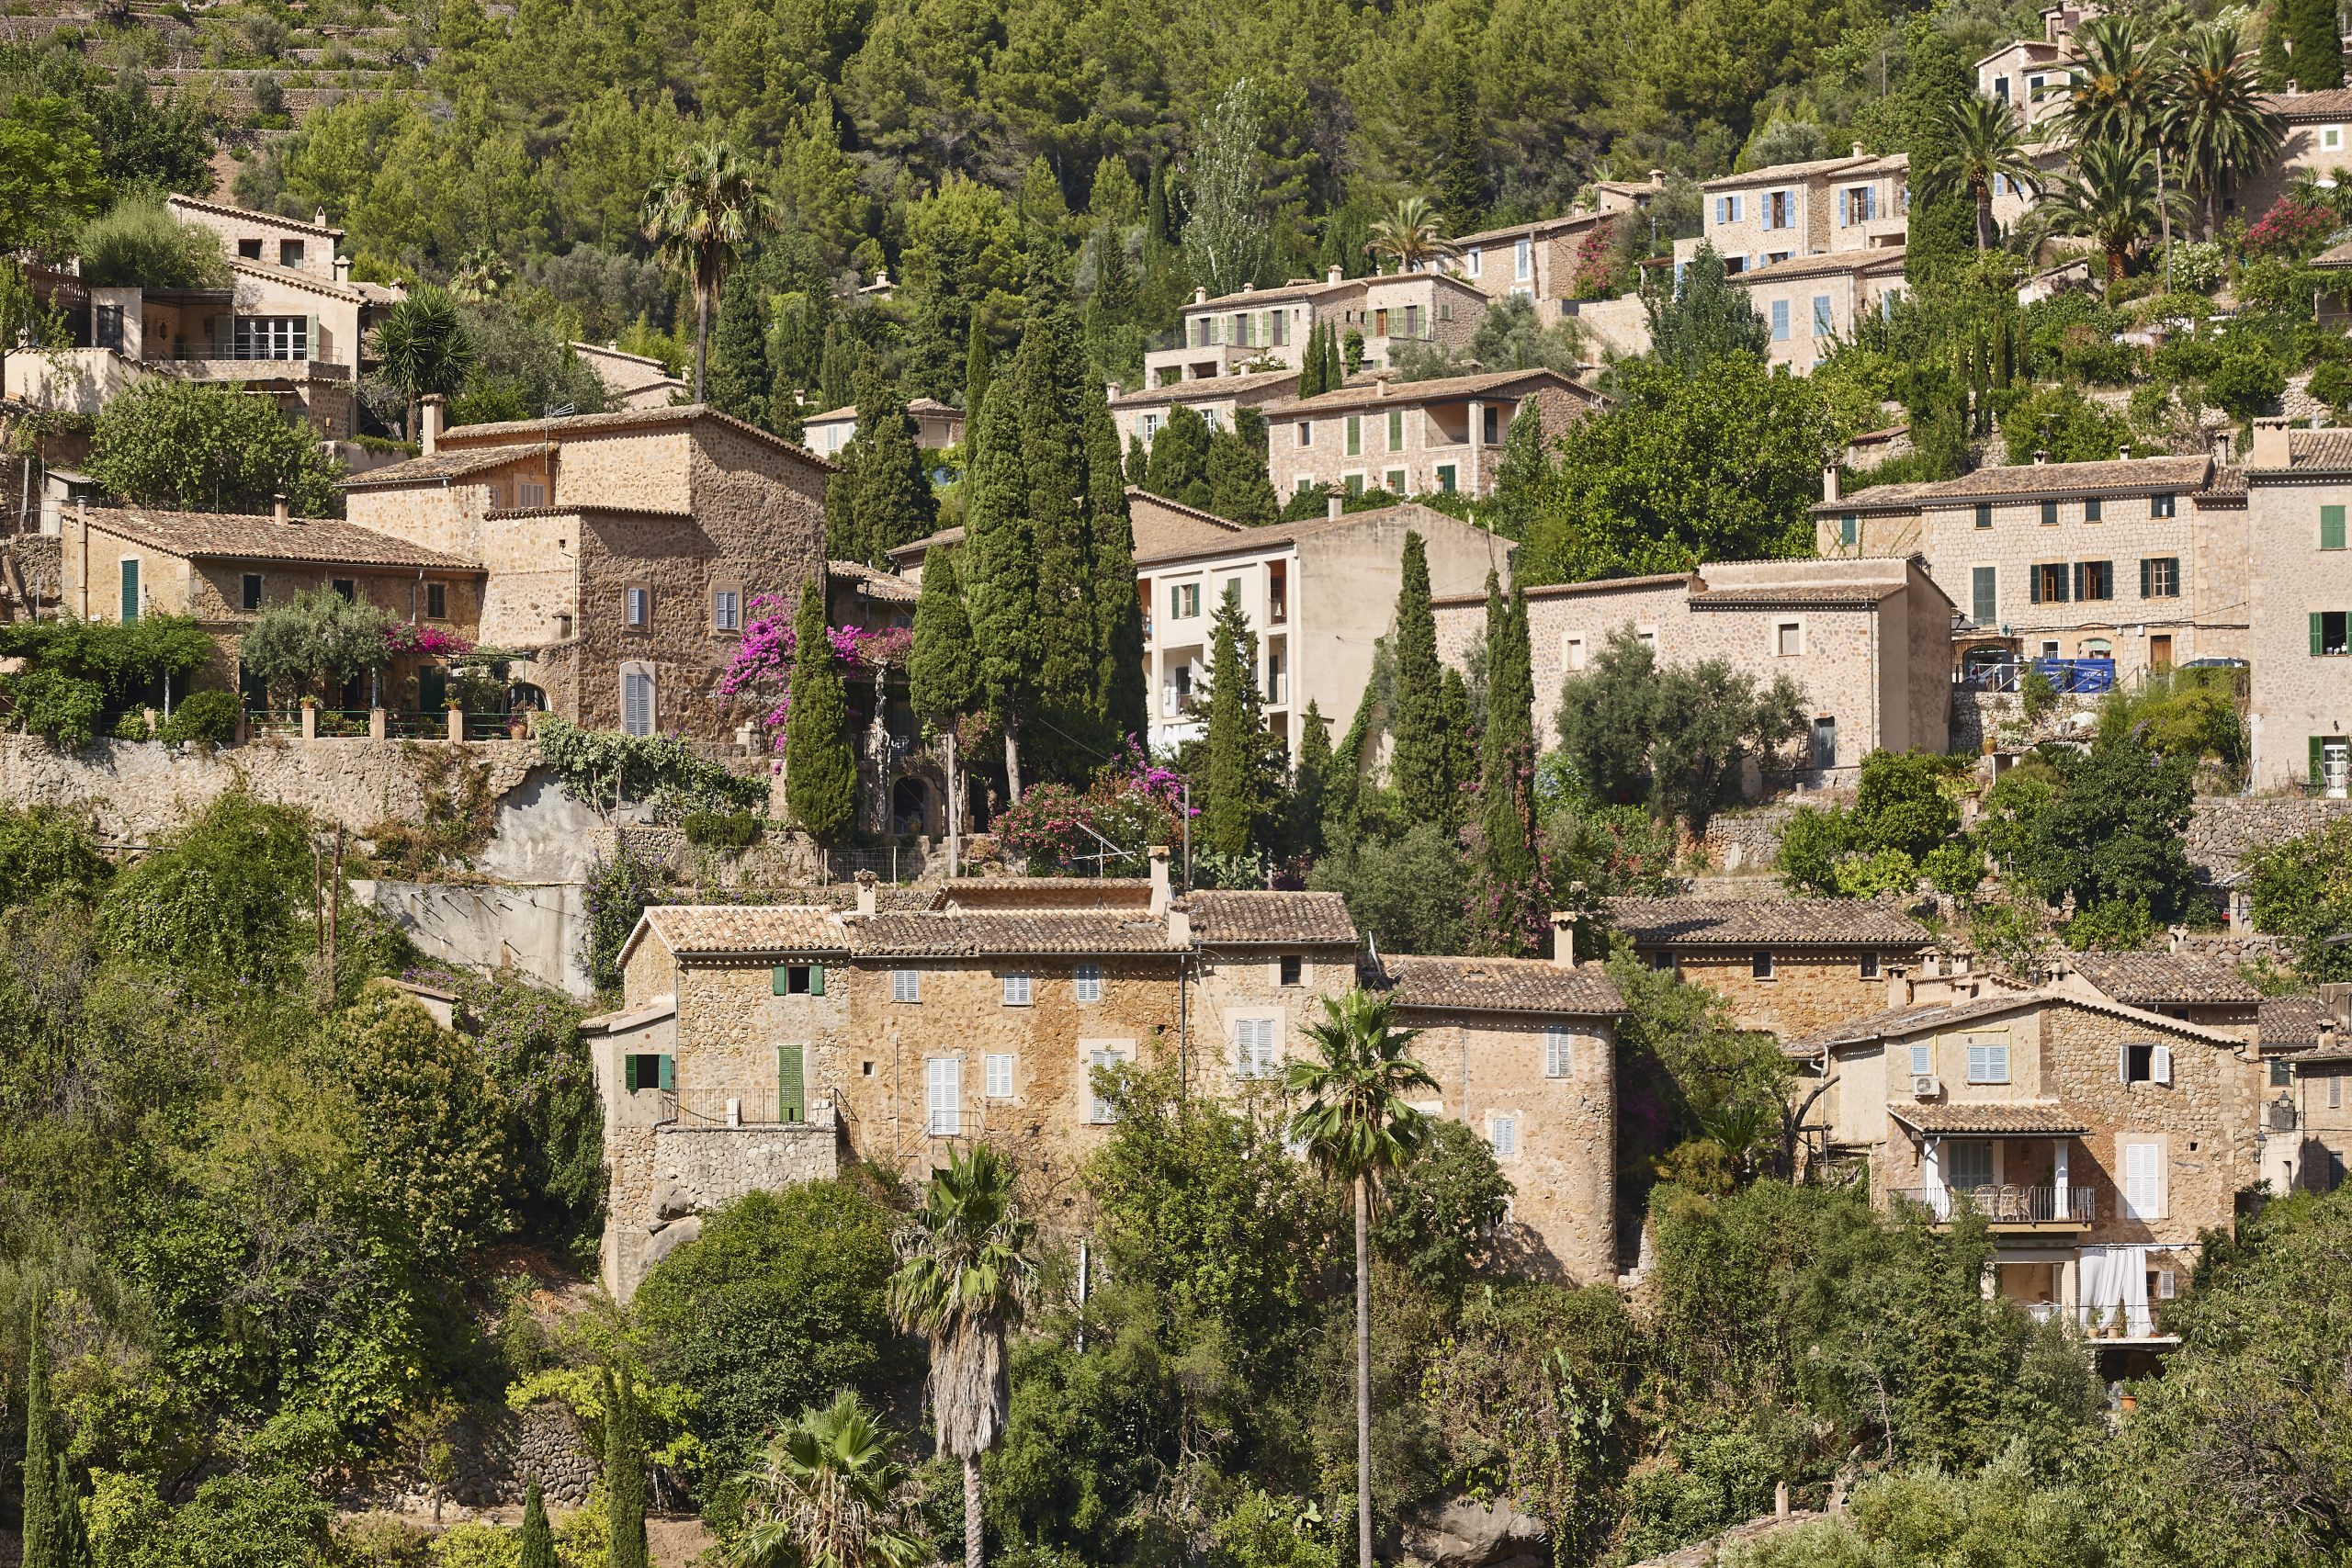 Wer auf Mallorca ein Haus bauen möchte, muss einige rechtliche Vorgaben erfüllen. Foto: ABBPhoto via Envato